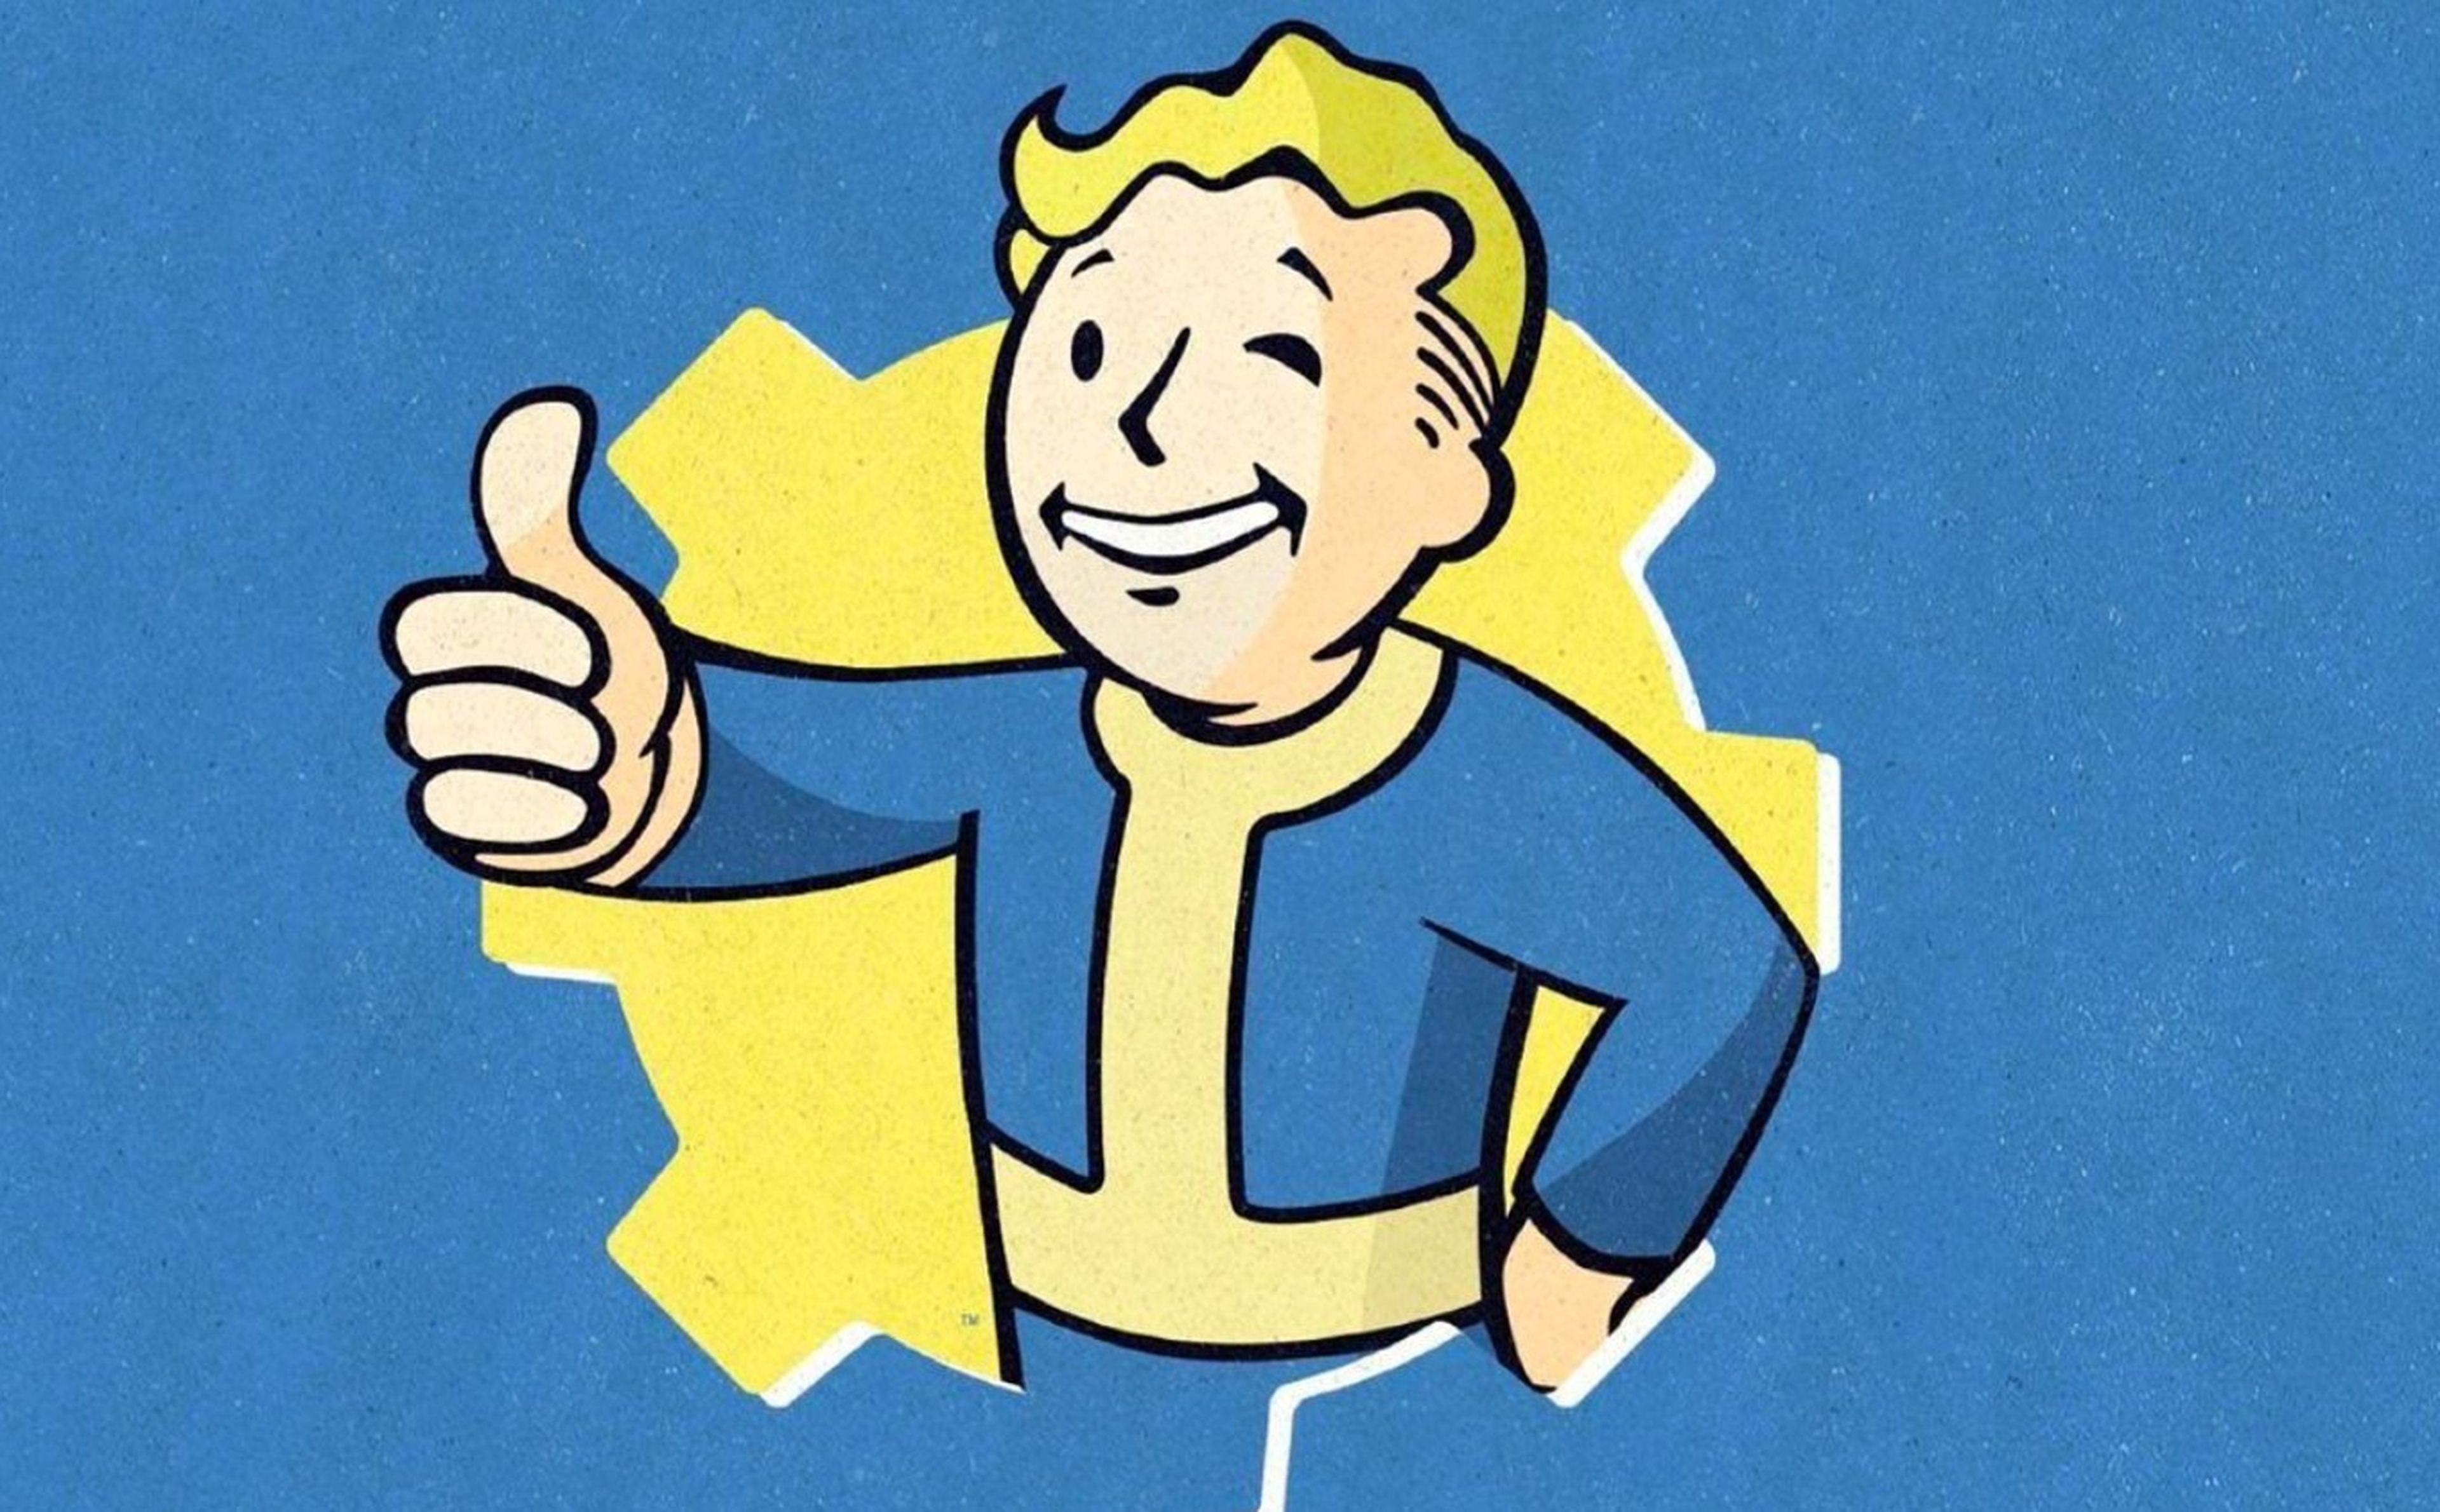 Todos los juegos de Fallout de peor a mejor y orden cronológico